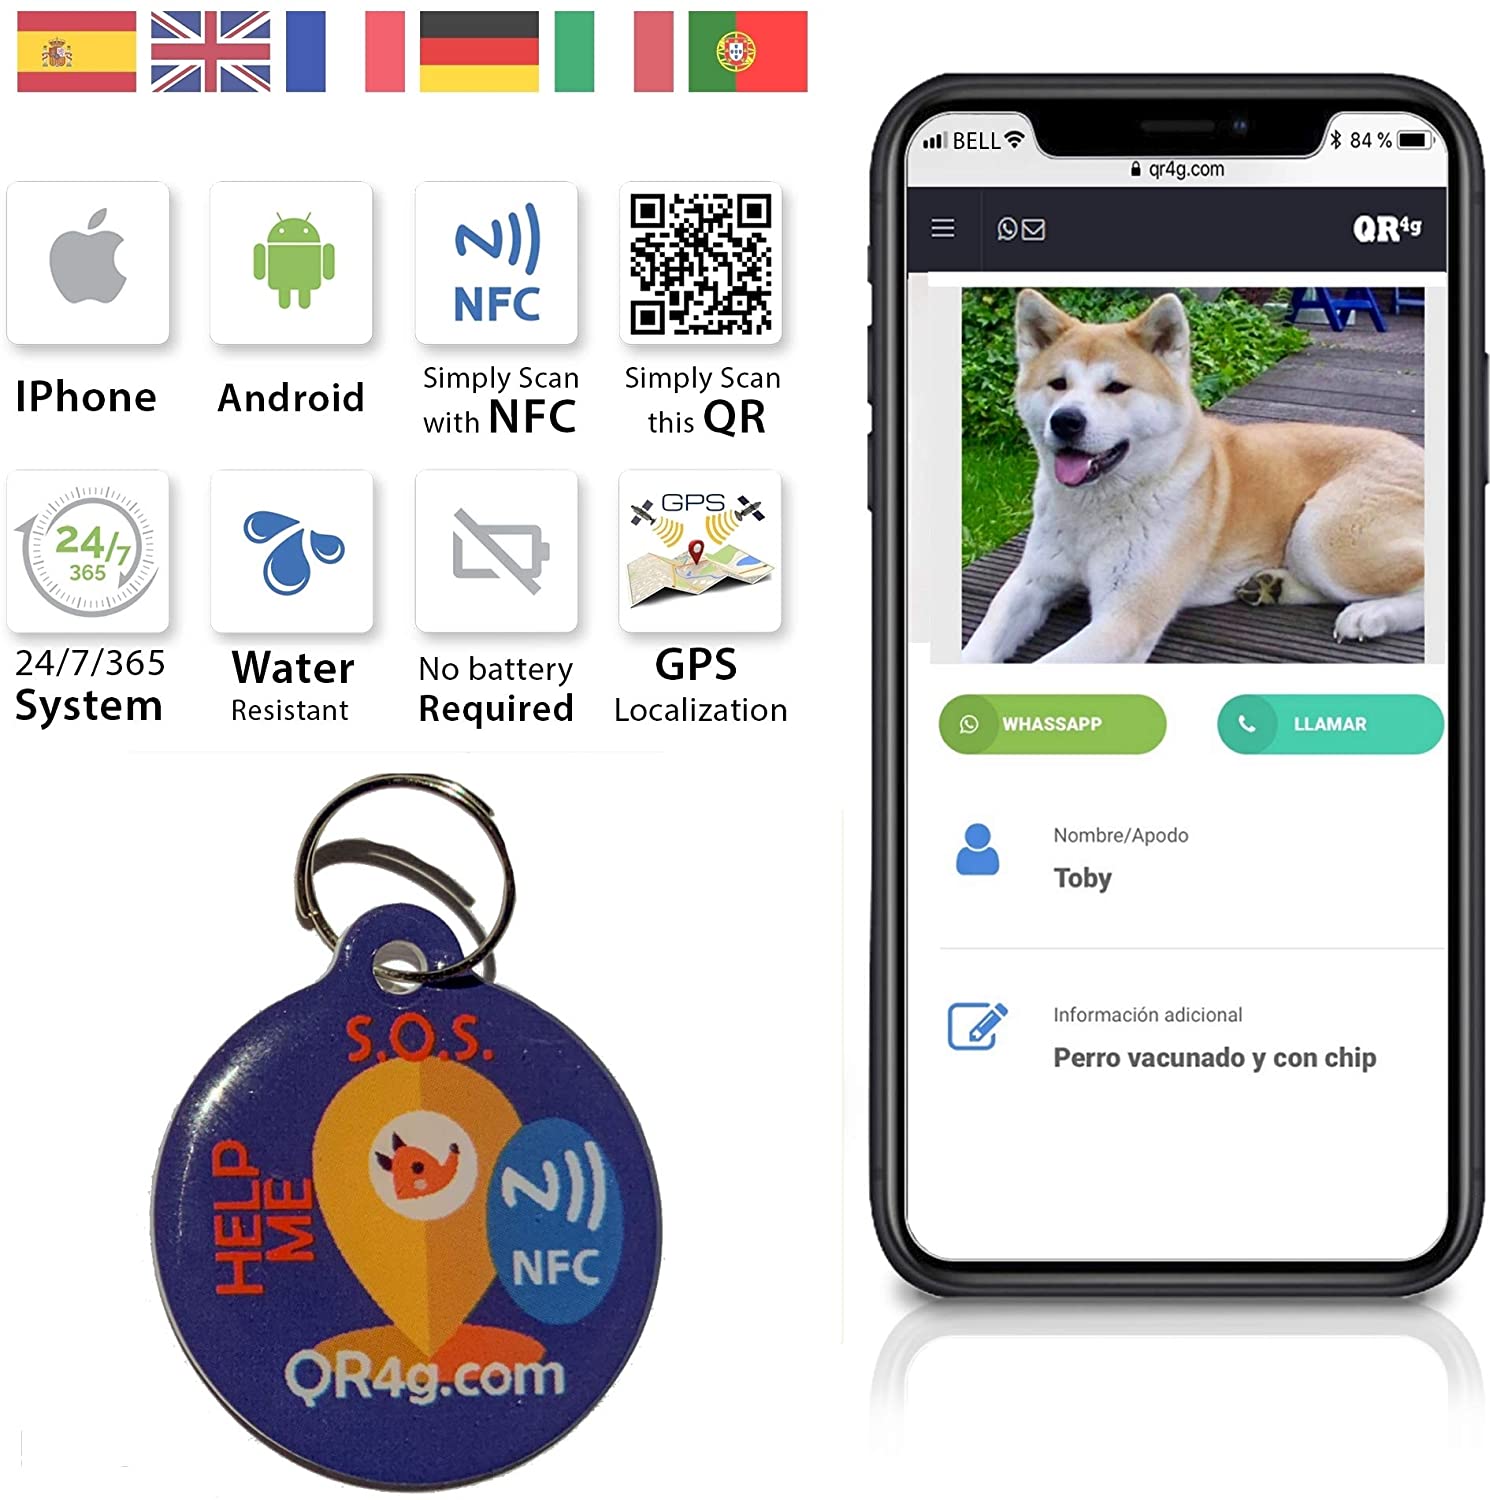  QR4G.com GPS Placa identificativa inteligente para mascotas (perros y gatos) con QR GPS 